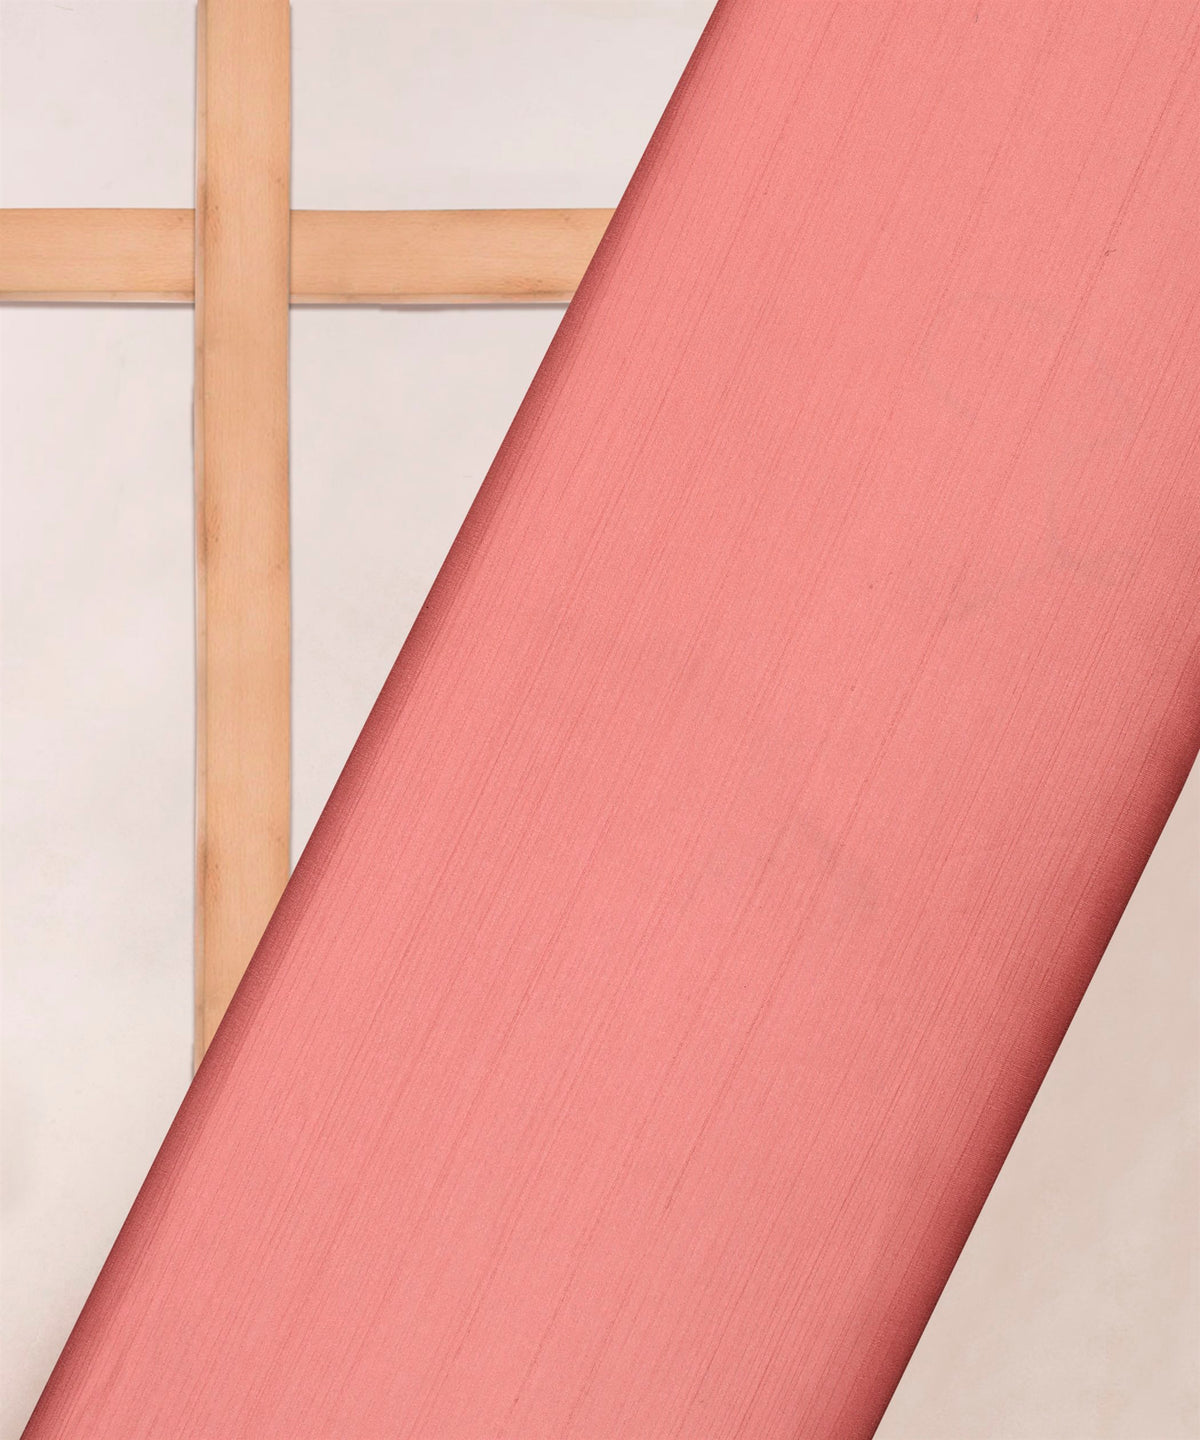 Light Pink Plain Satin Georgette Slub Fabric